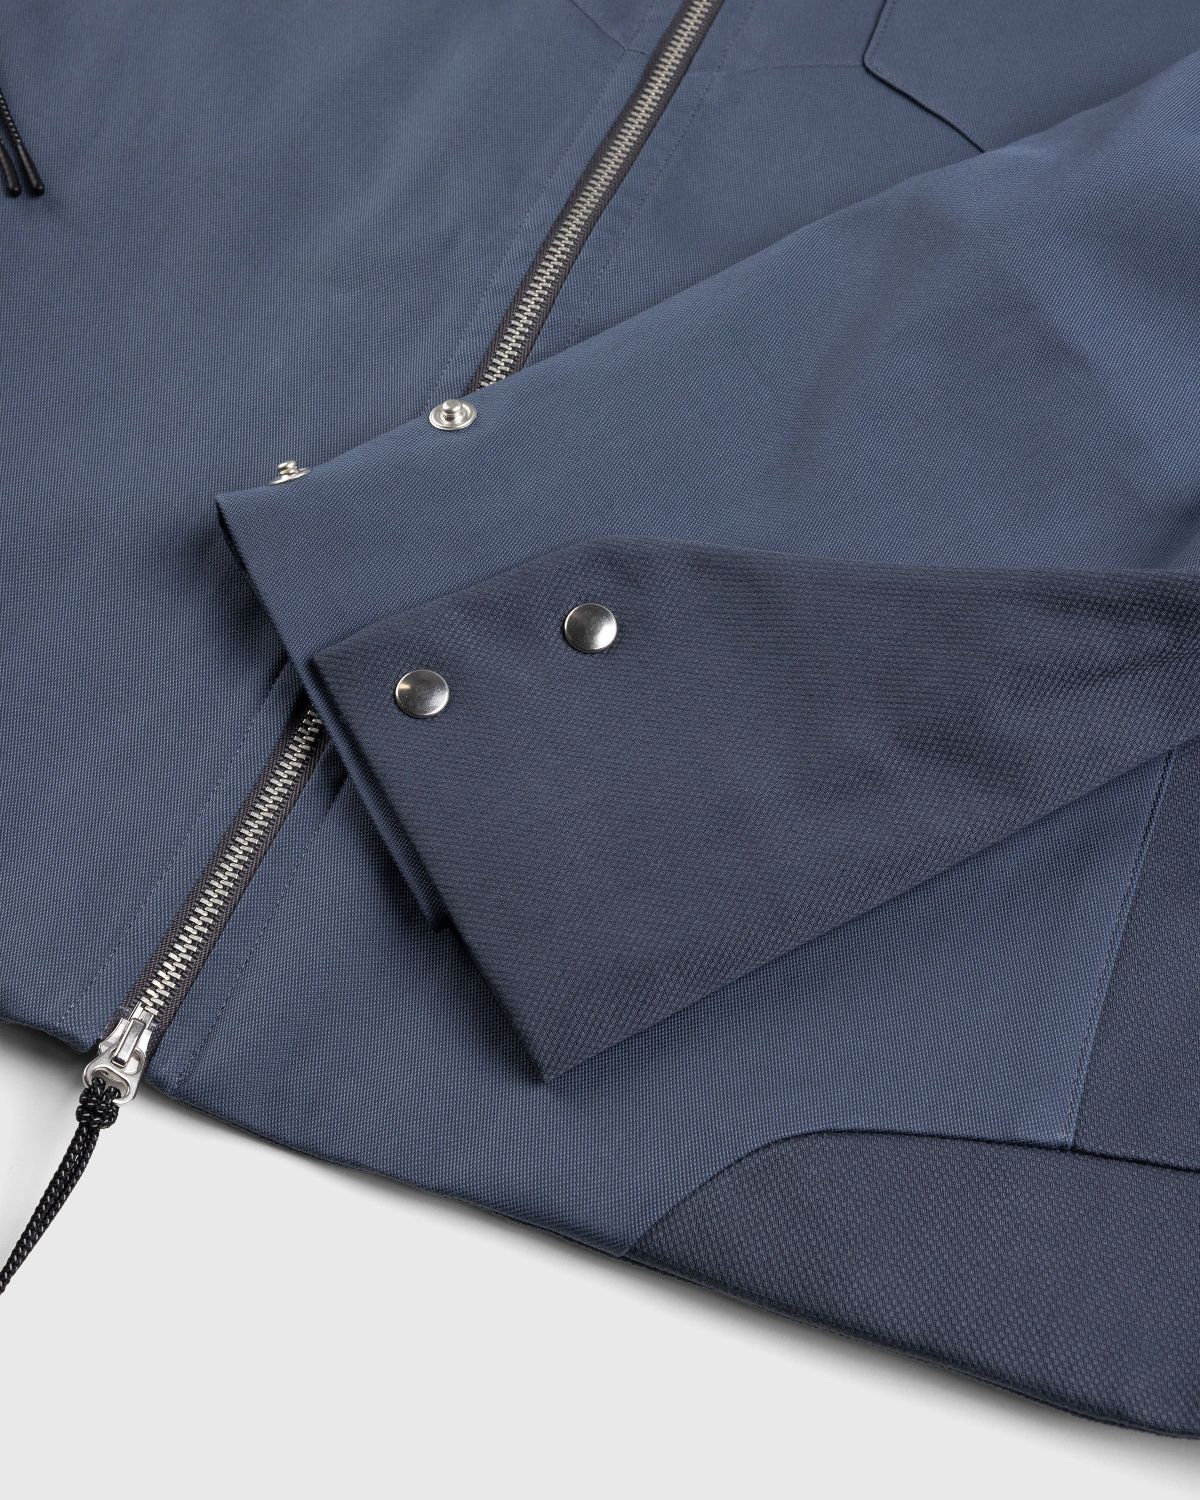 _J.L-A.L_ – Delwa Jacket Blue - Outerwear - Blue - Image 6